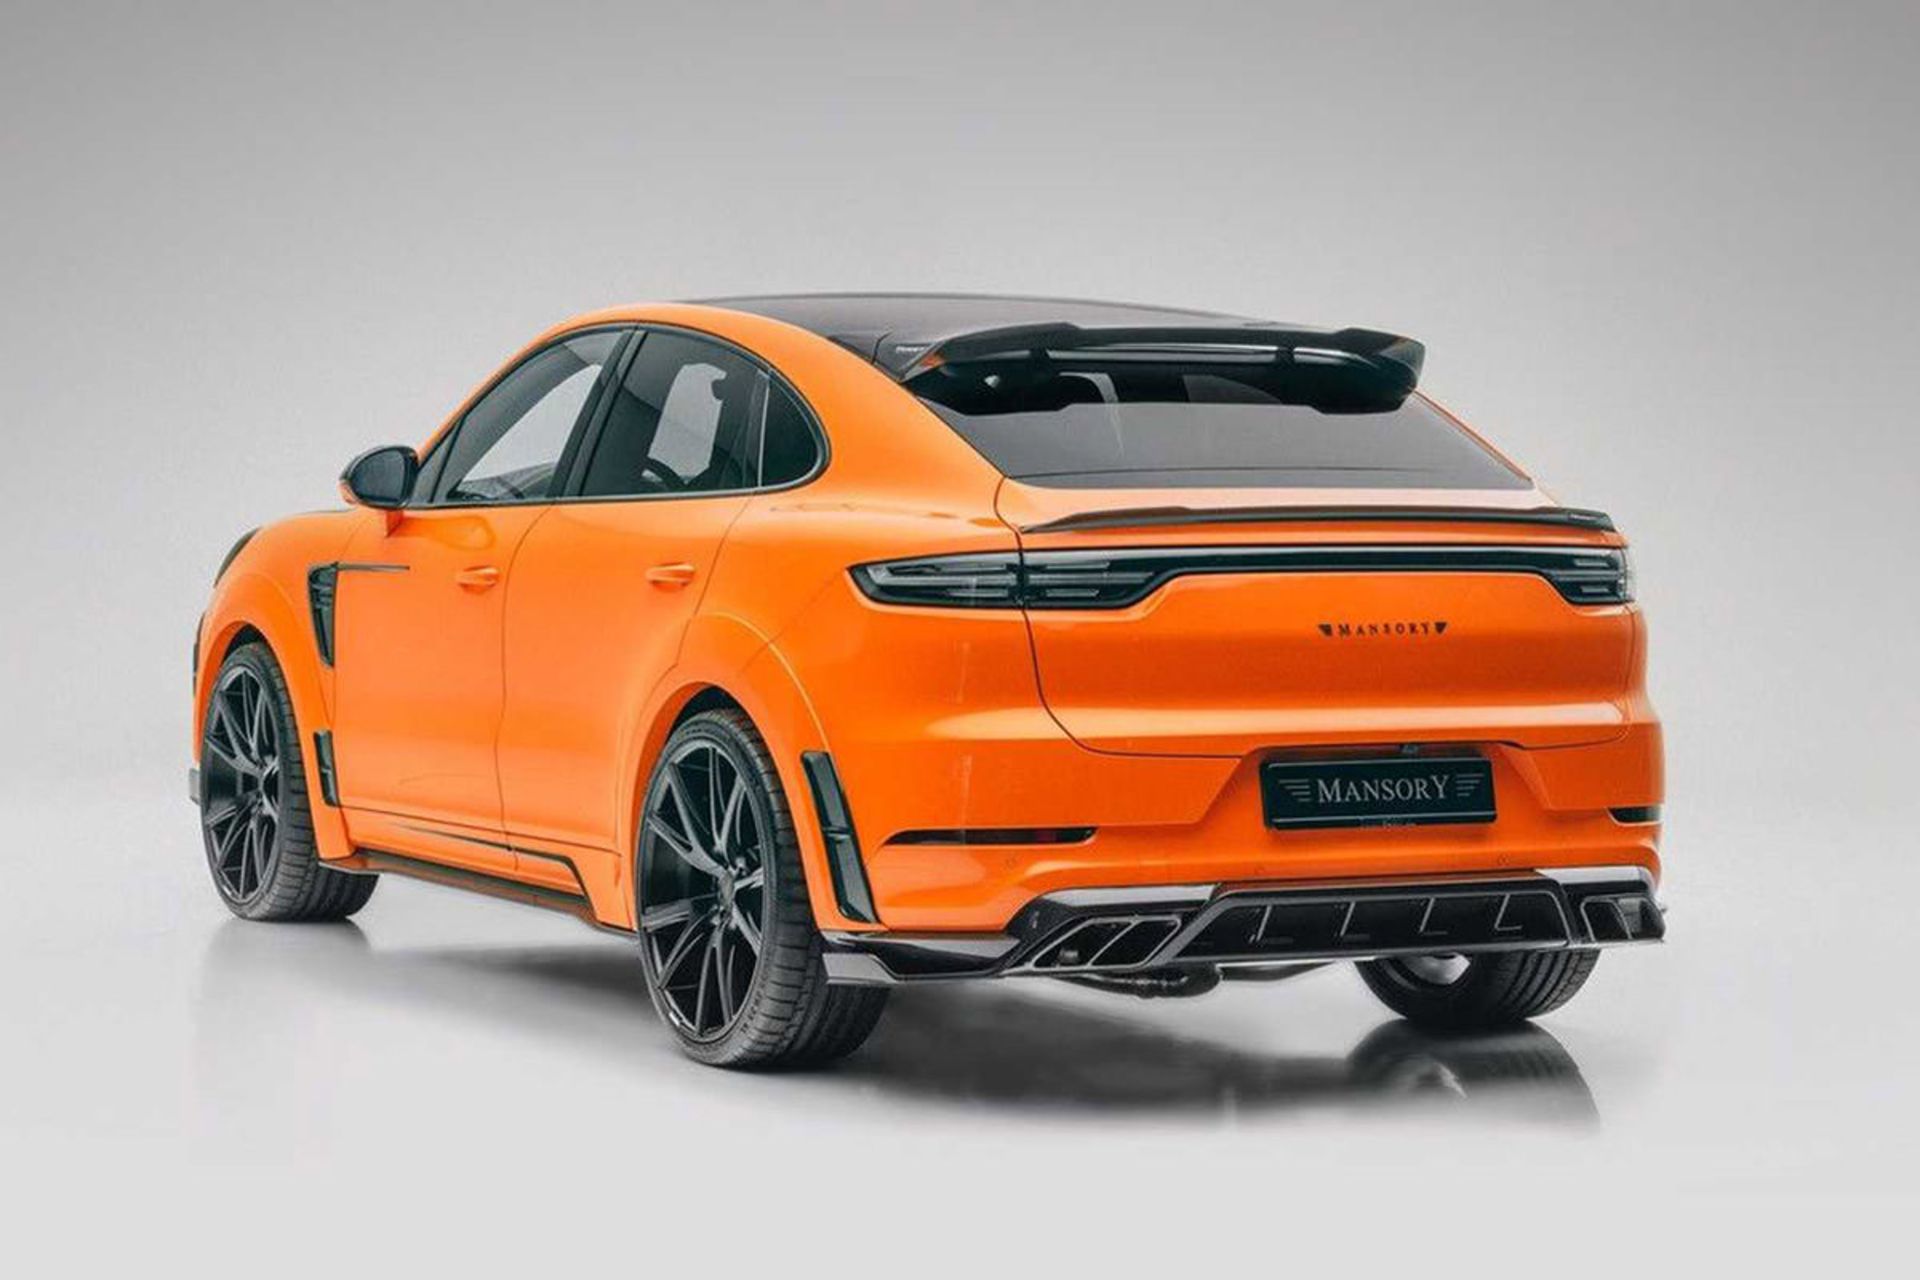 نمای عقب شاسی بلند پورشه کاین تیونینگ منصوری / Mansory Porsche Cayenne با طرح دو رنگ نارنجی و مشکی